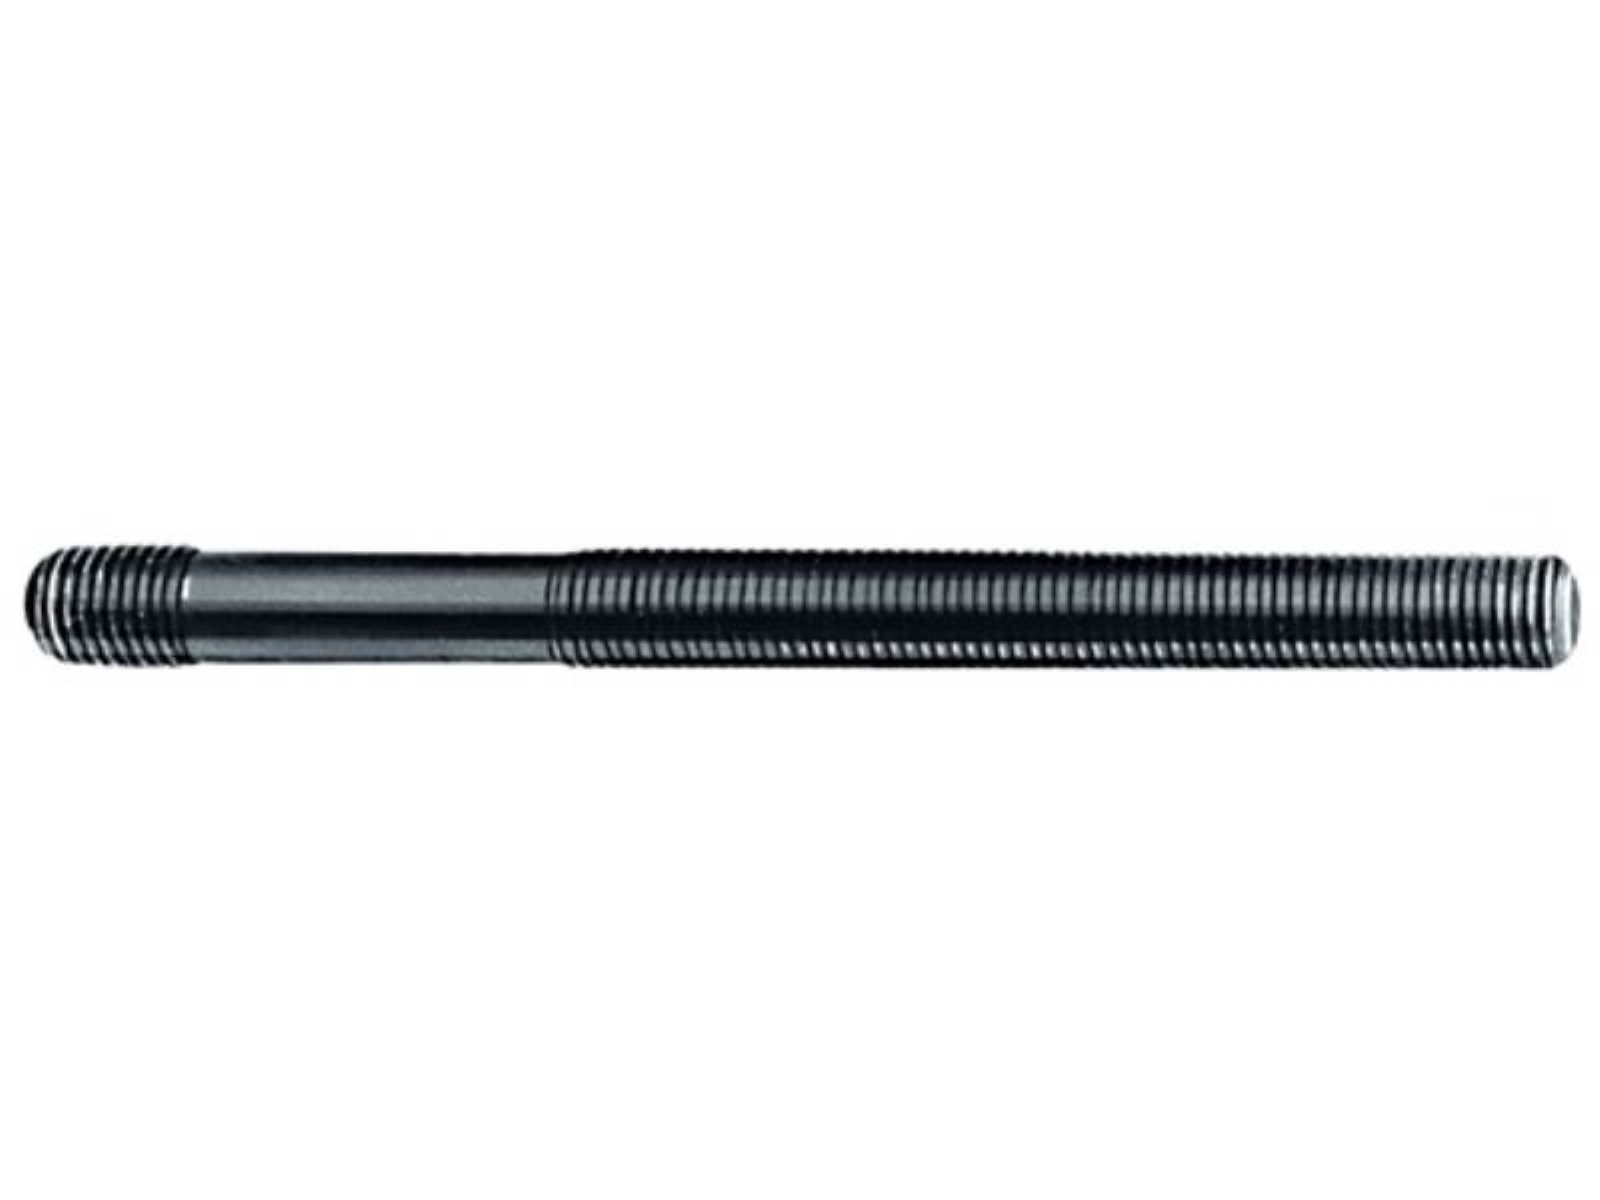 AMF Stiftschraube AMF Stiftschraube Gewind 10.9 auf M8x100mm DIN6379 gerolltes vergütet